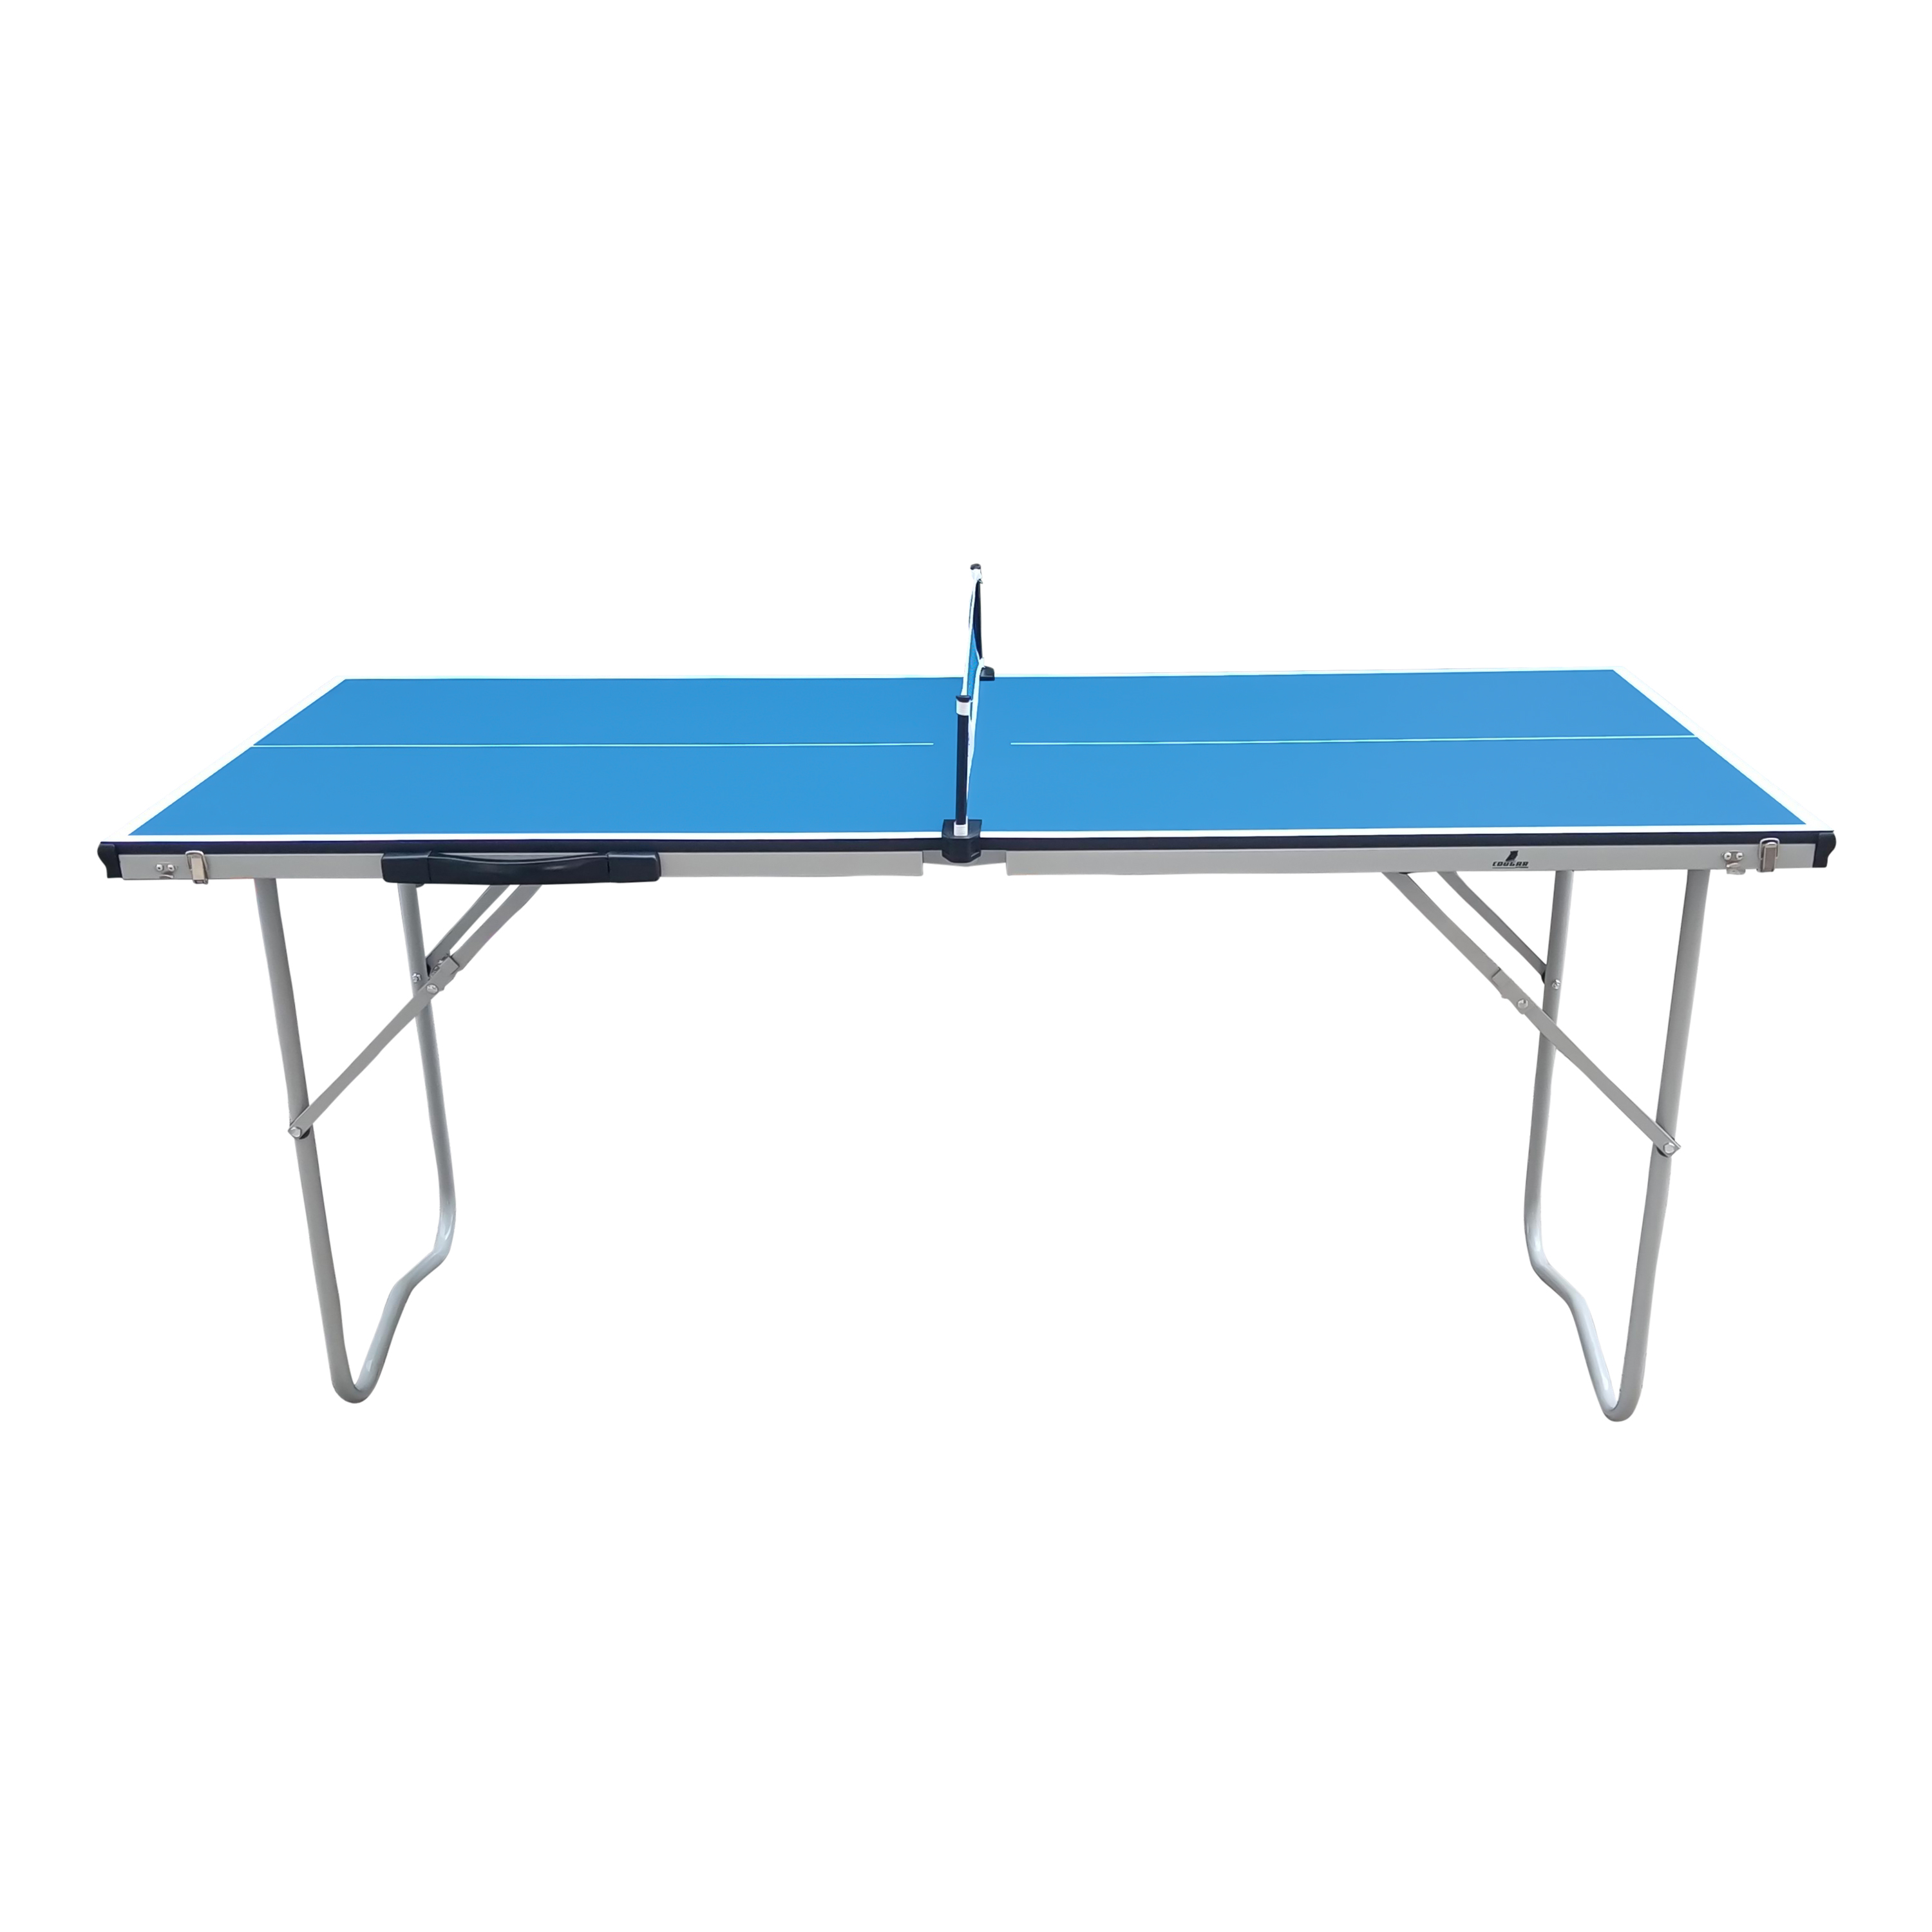 Cougar Tischtennisplatte Mini 1500 Basic tragbar Blau